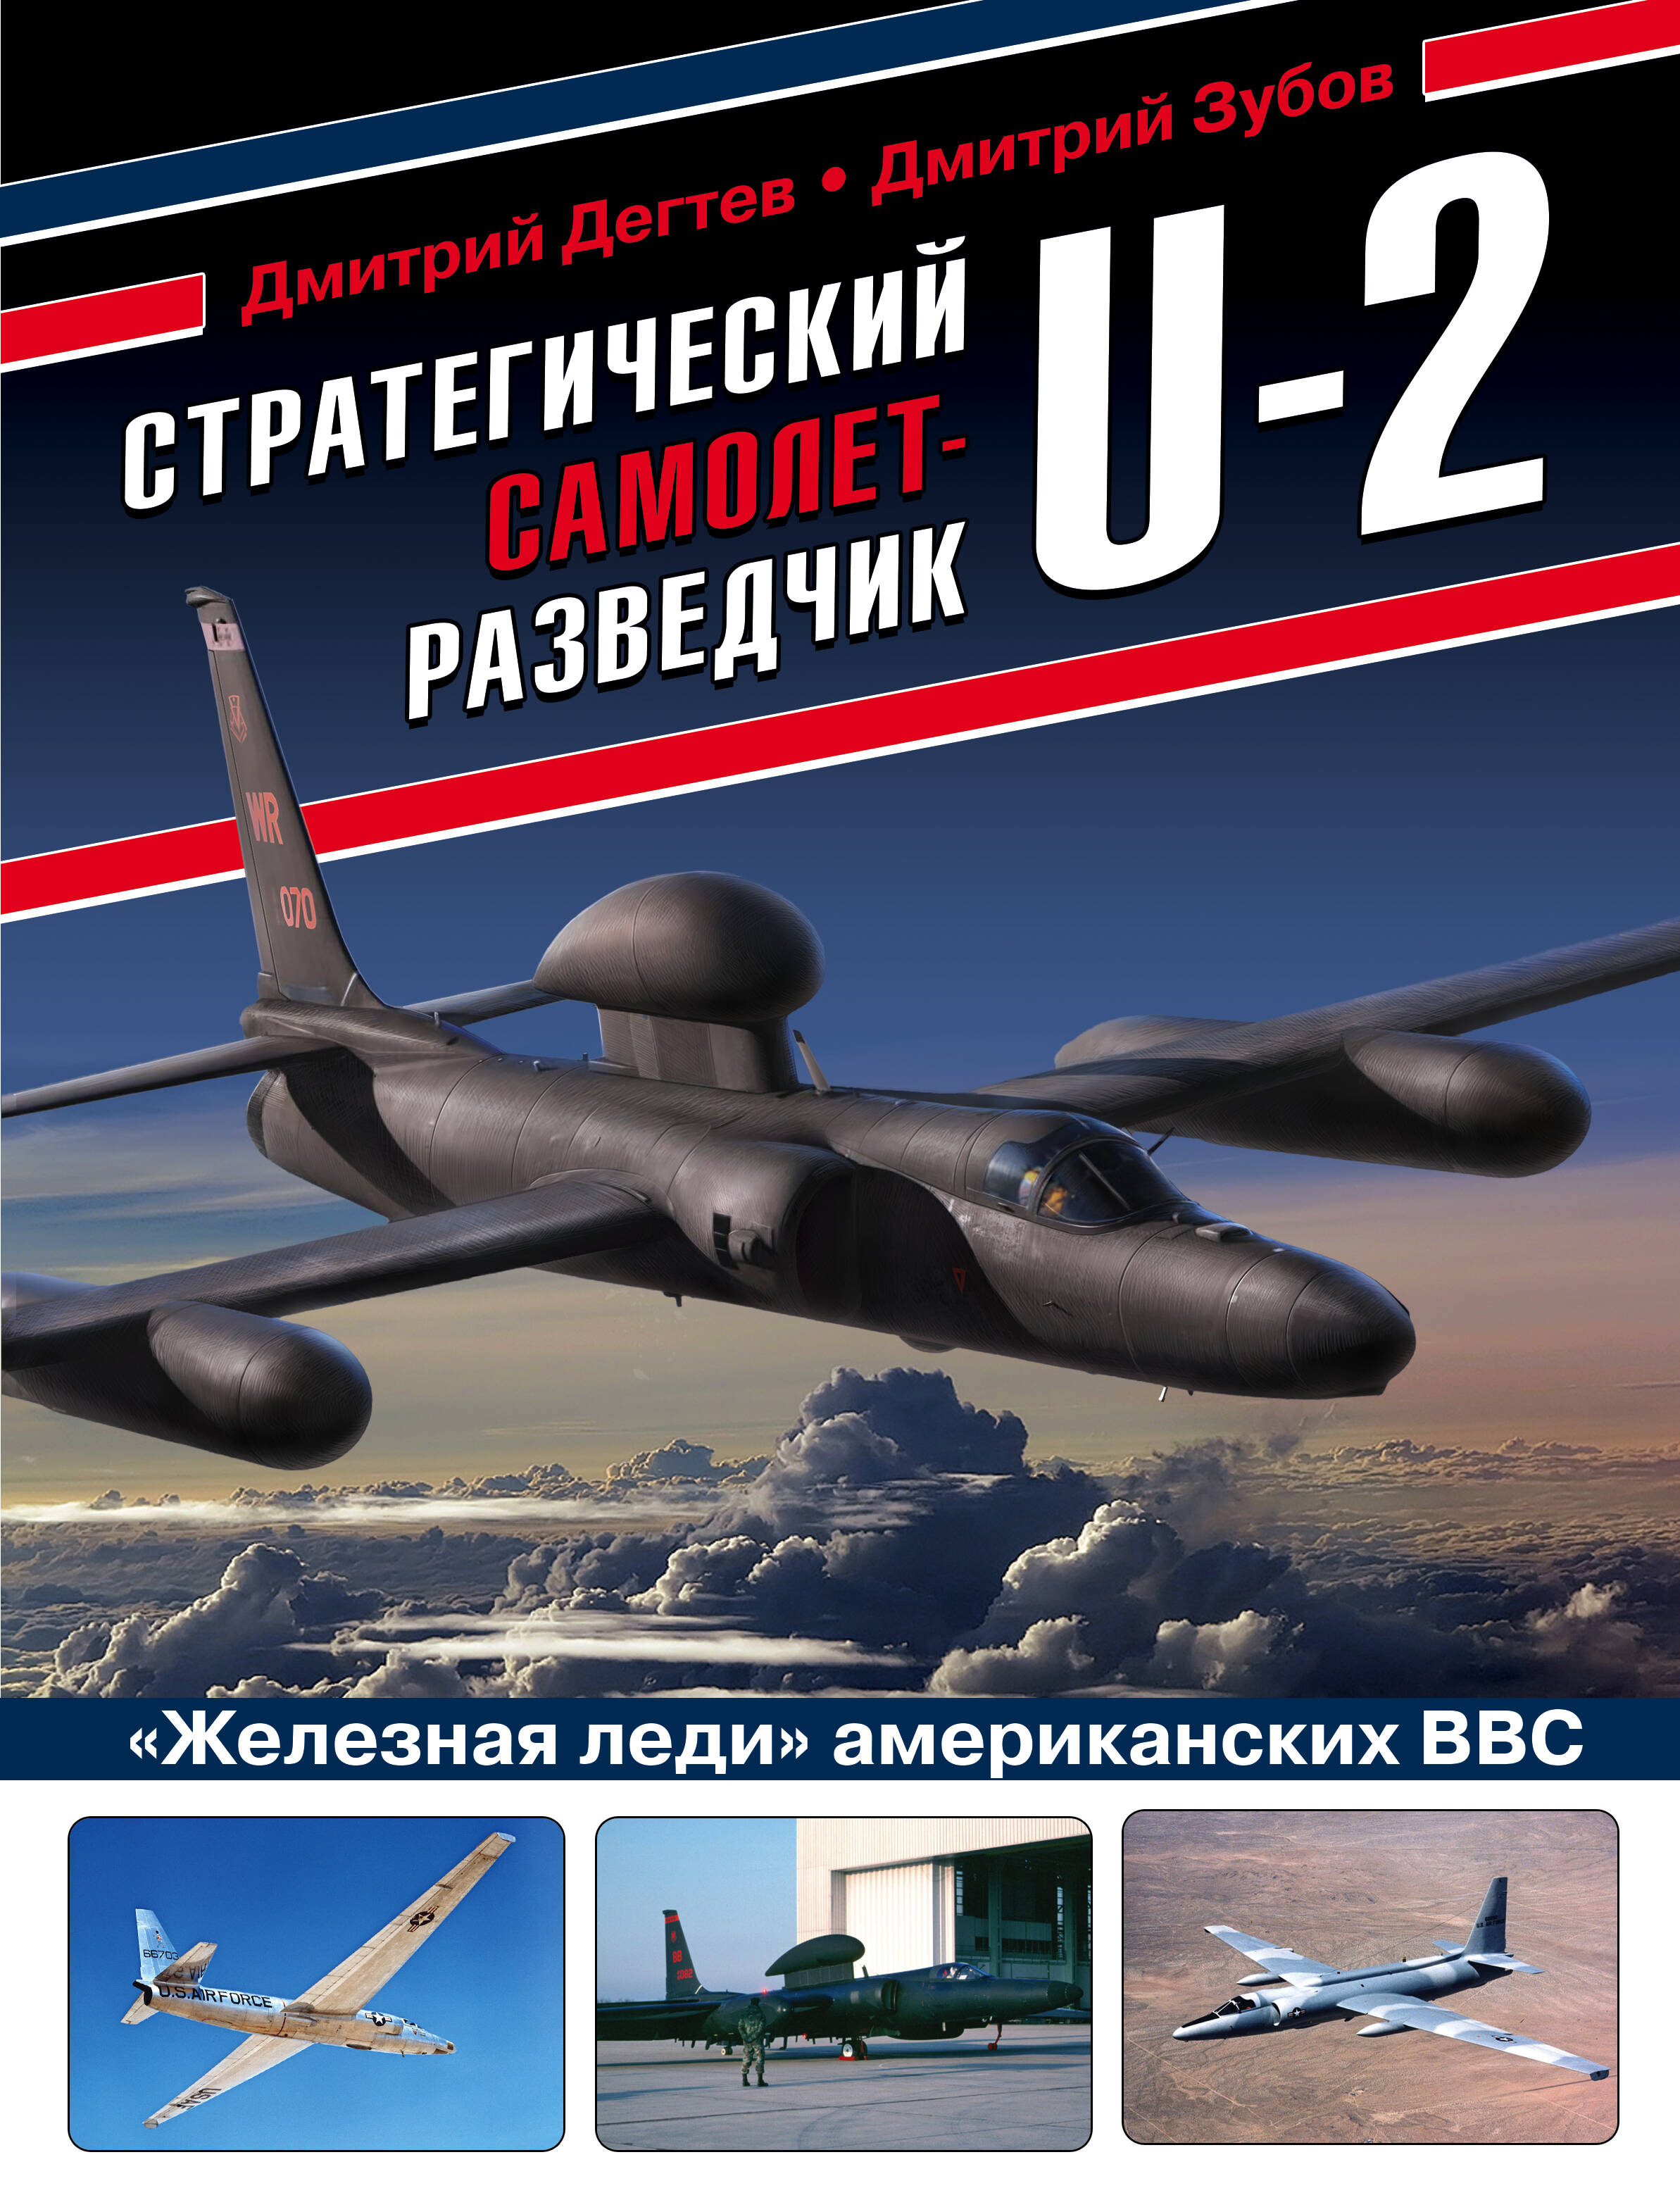 Дегтев Дмитрий Михайлович Стратегический самолет-разведчик U-2. Железная леди американских ВВС